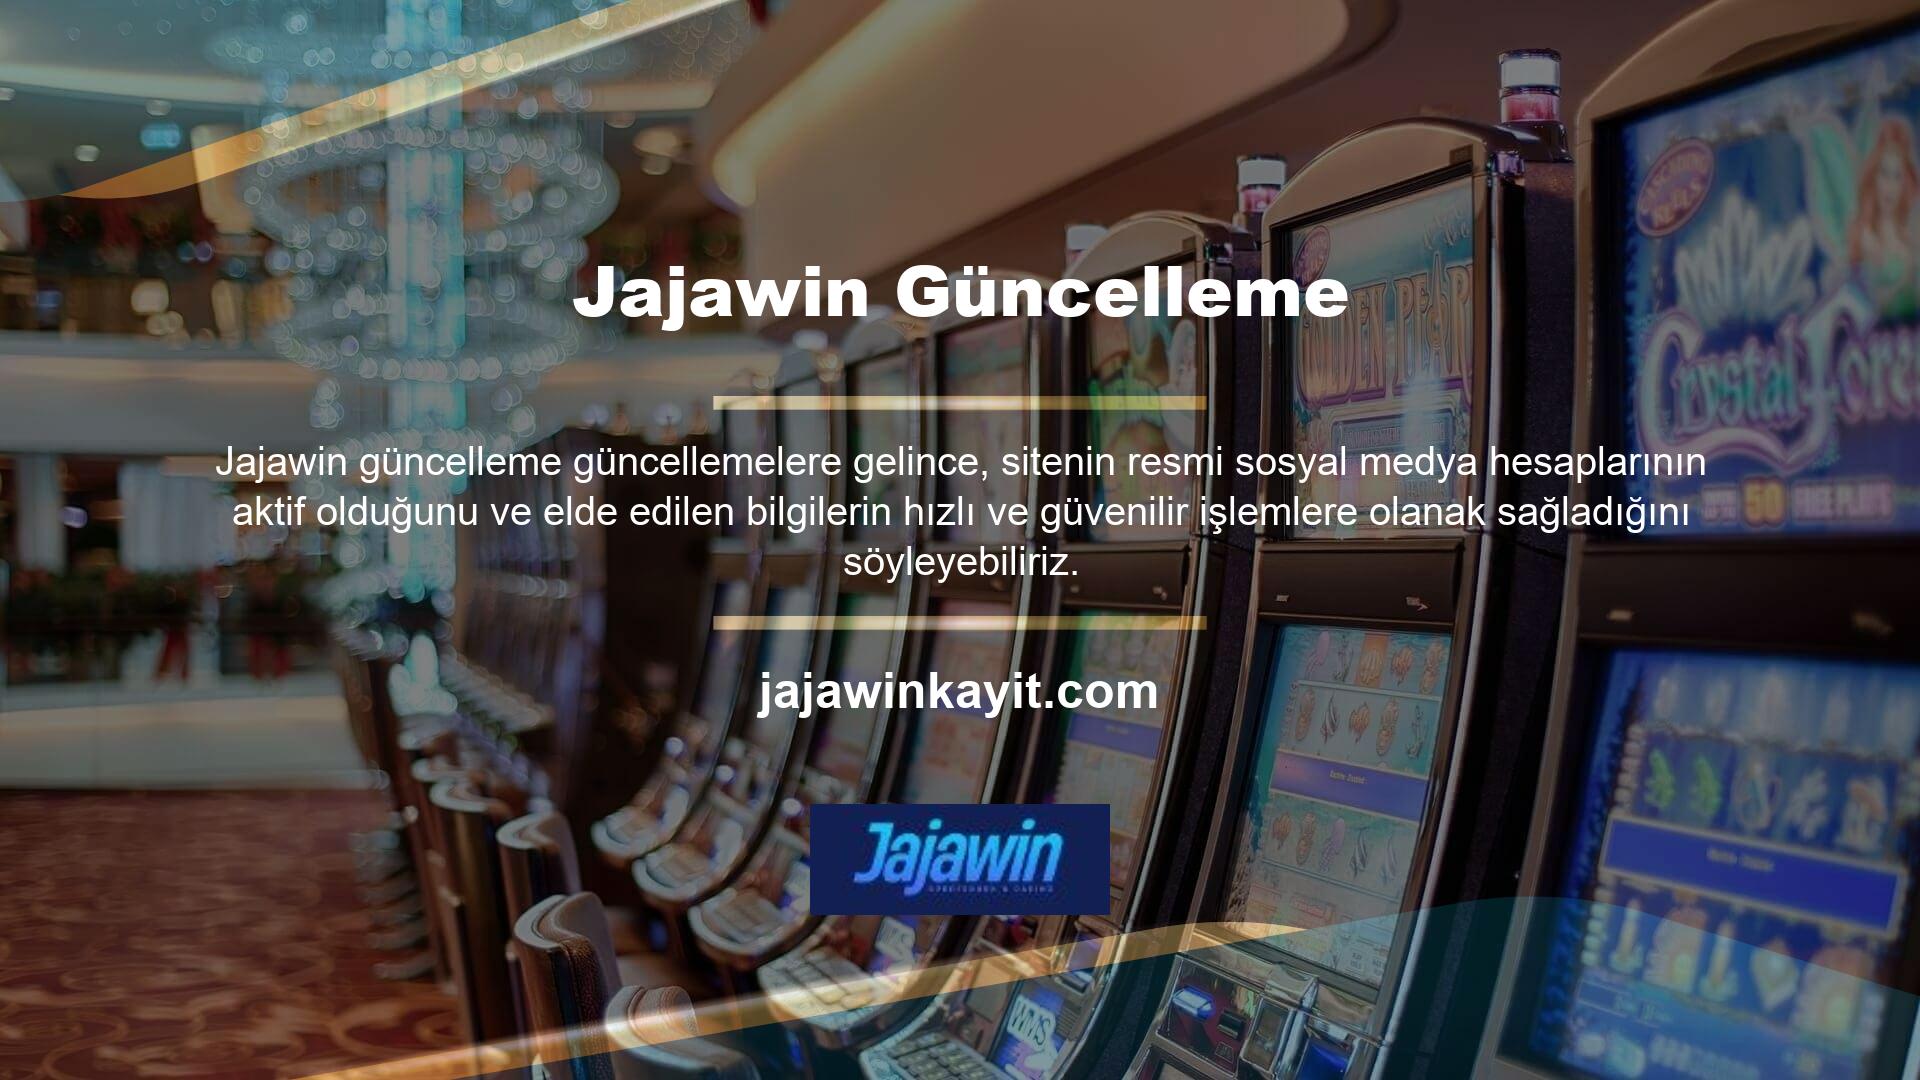 Jajawin web sitesi, mobil veya masaüstü oturum açma hakları sağlayan üyeler için seçeneklere sahiptir